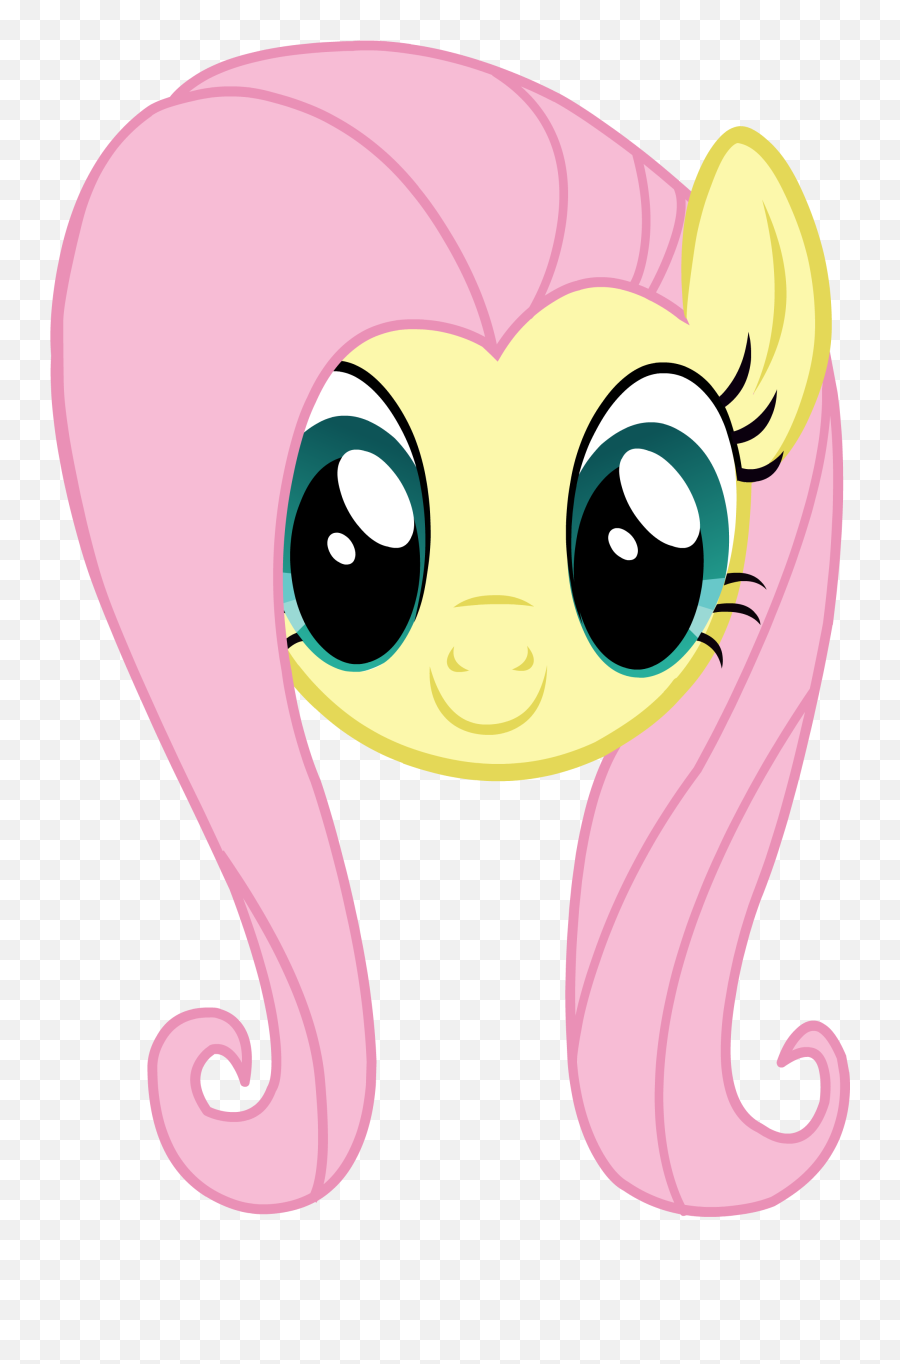 Rarity Pony Pinkie Pie Fluttershy Youtube - My Little Pony Emoji,Pinkie Pie Clipart